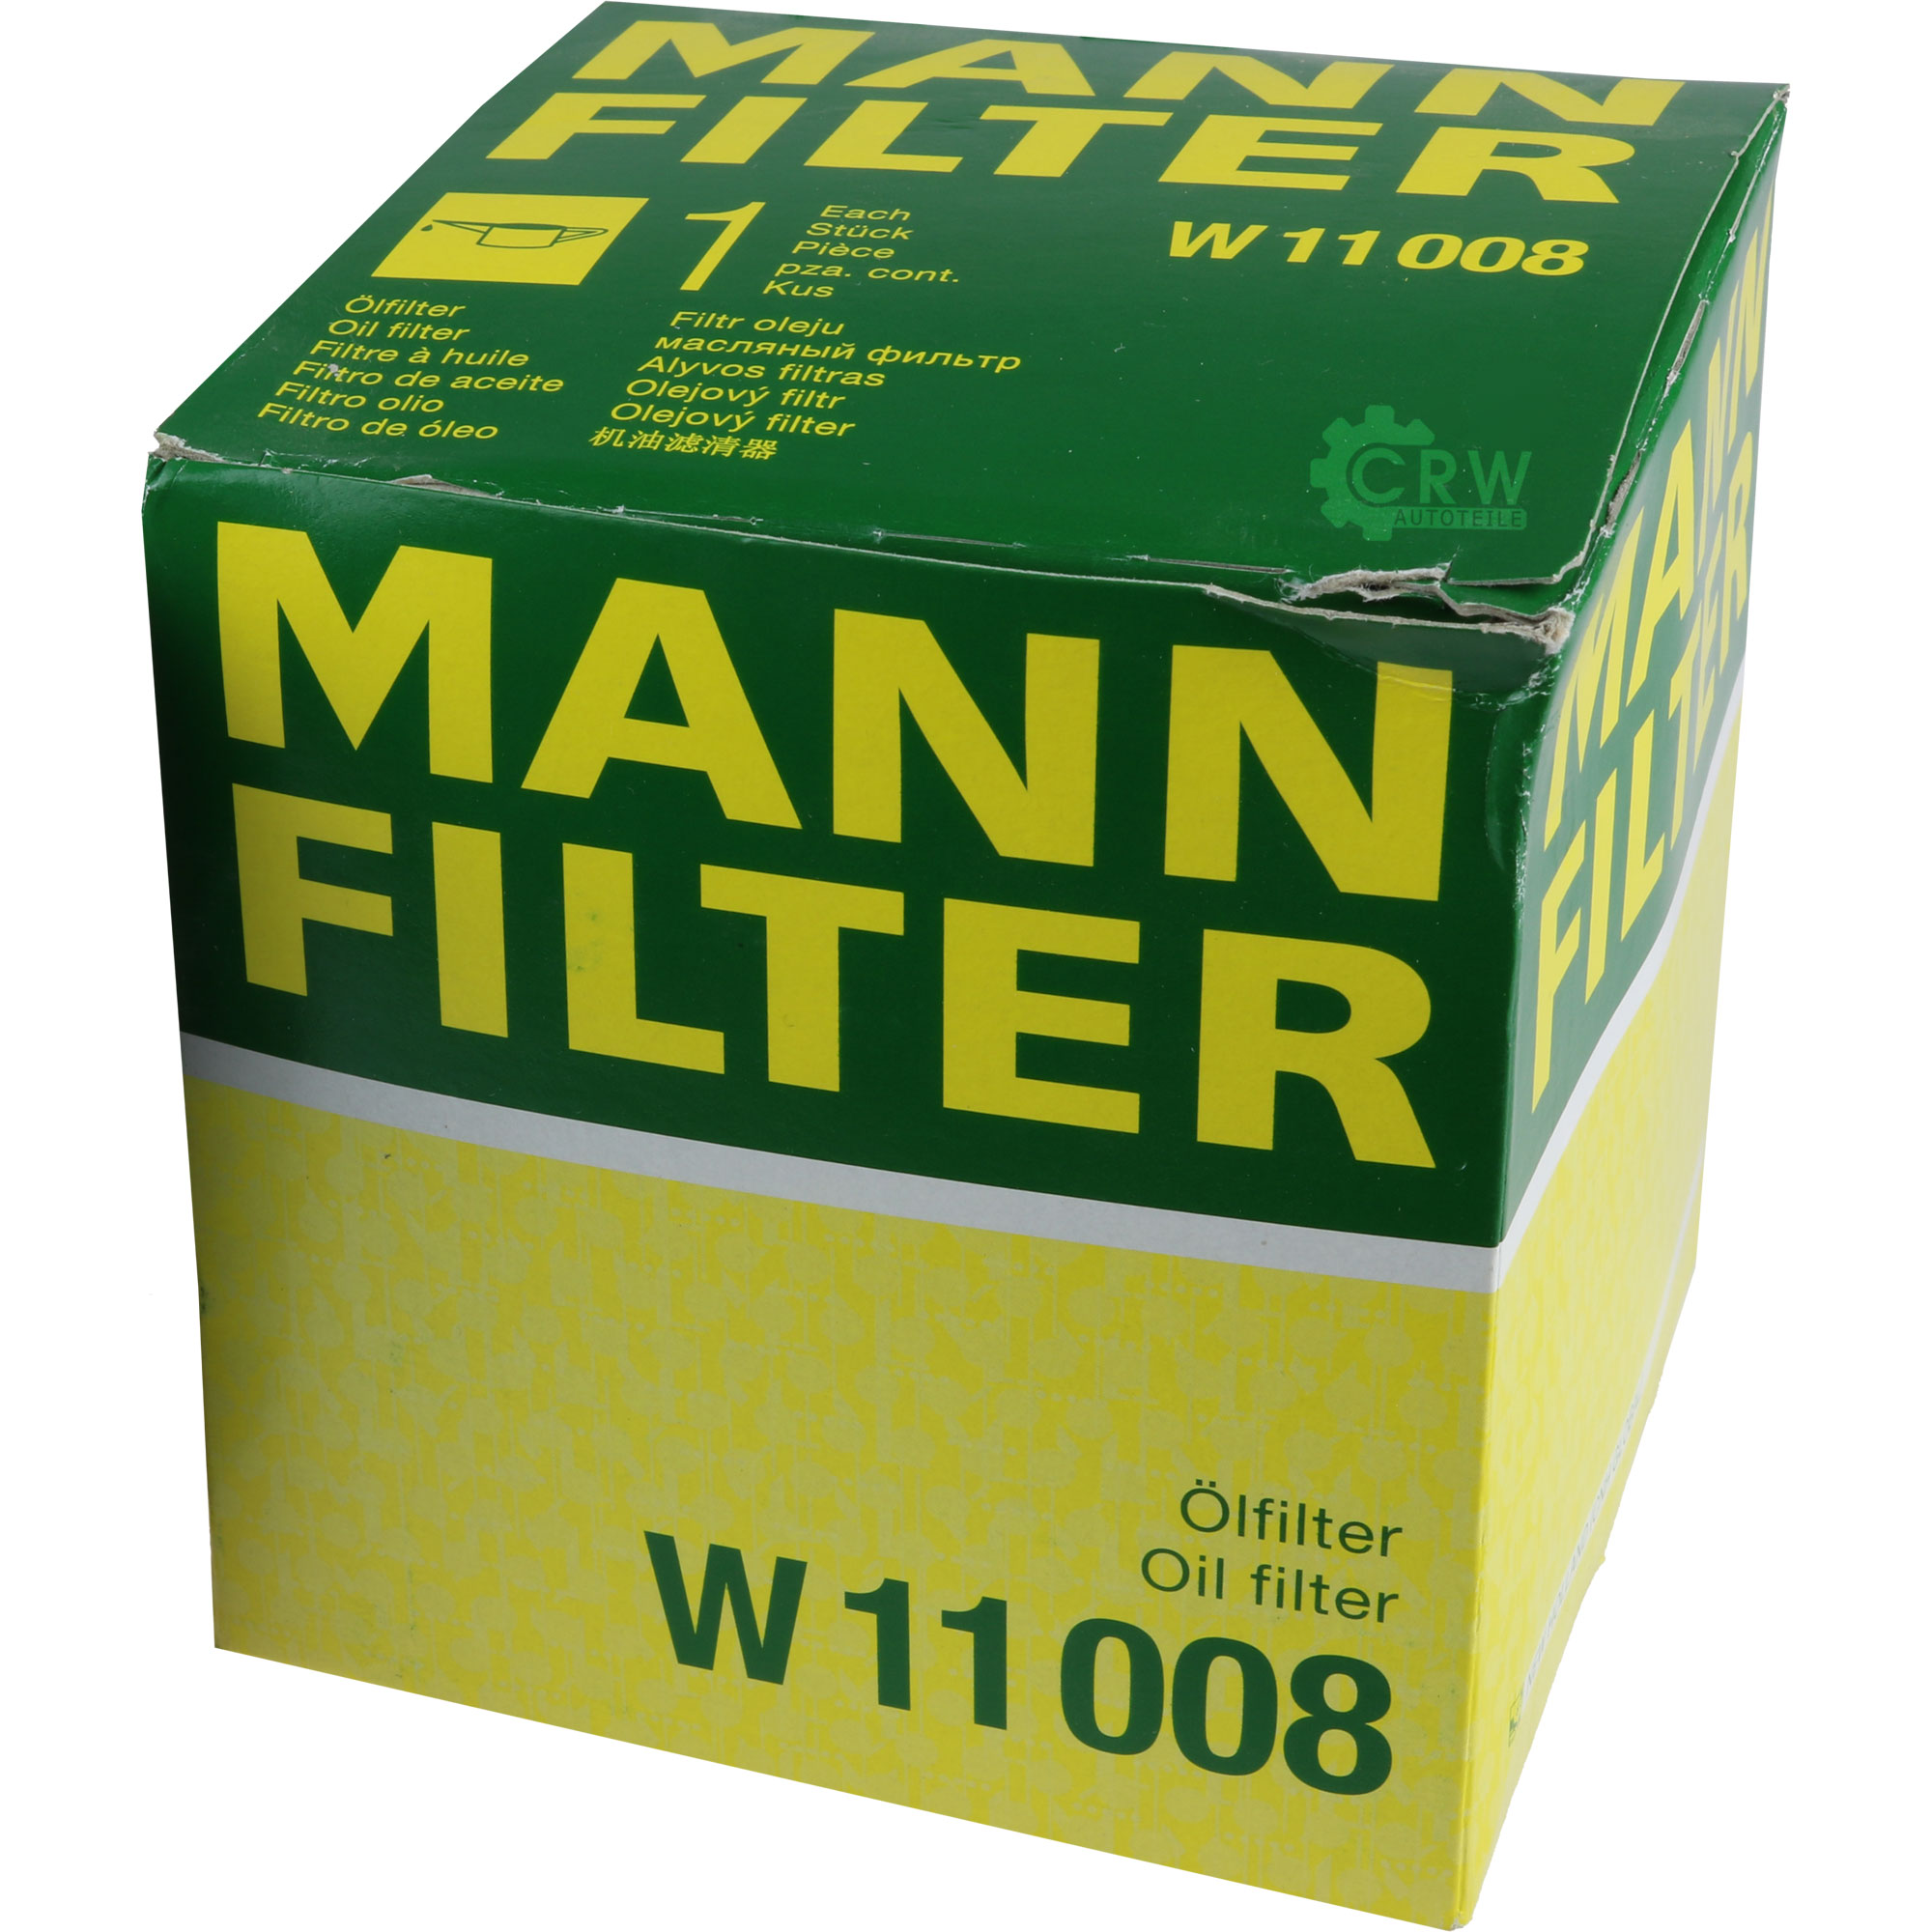 MANN Ölfilter W 11 008 Oil Filter